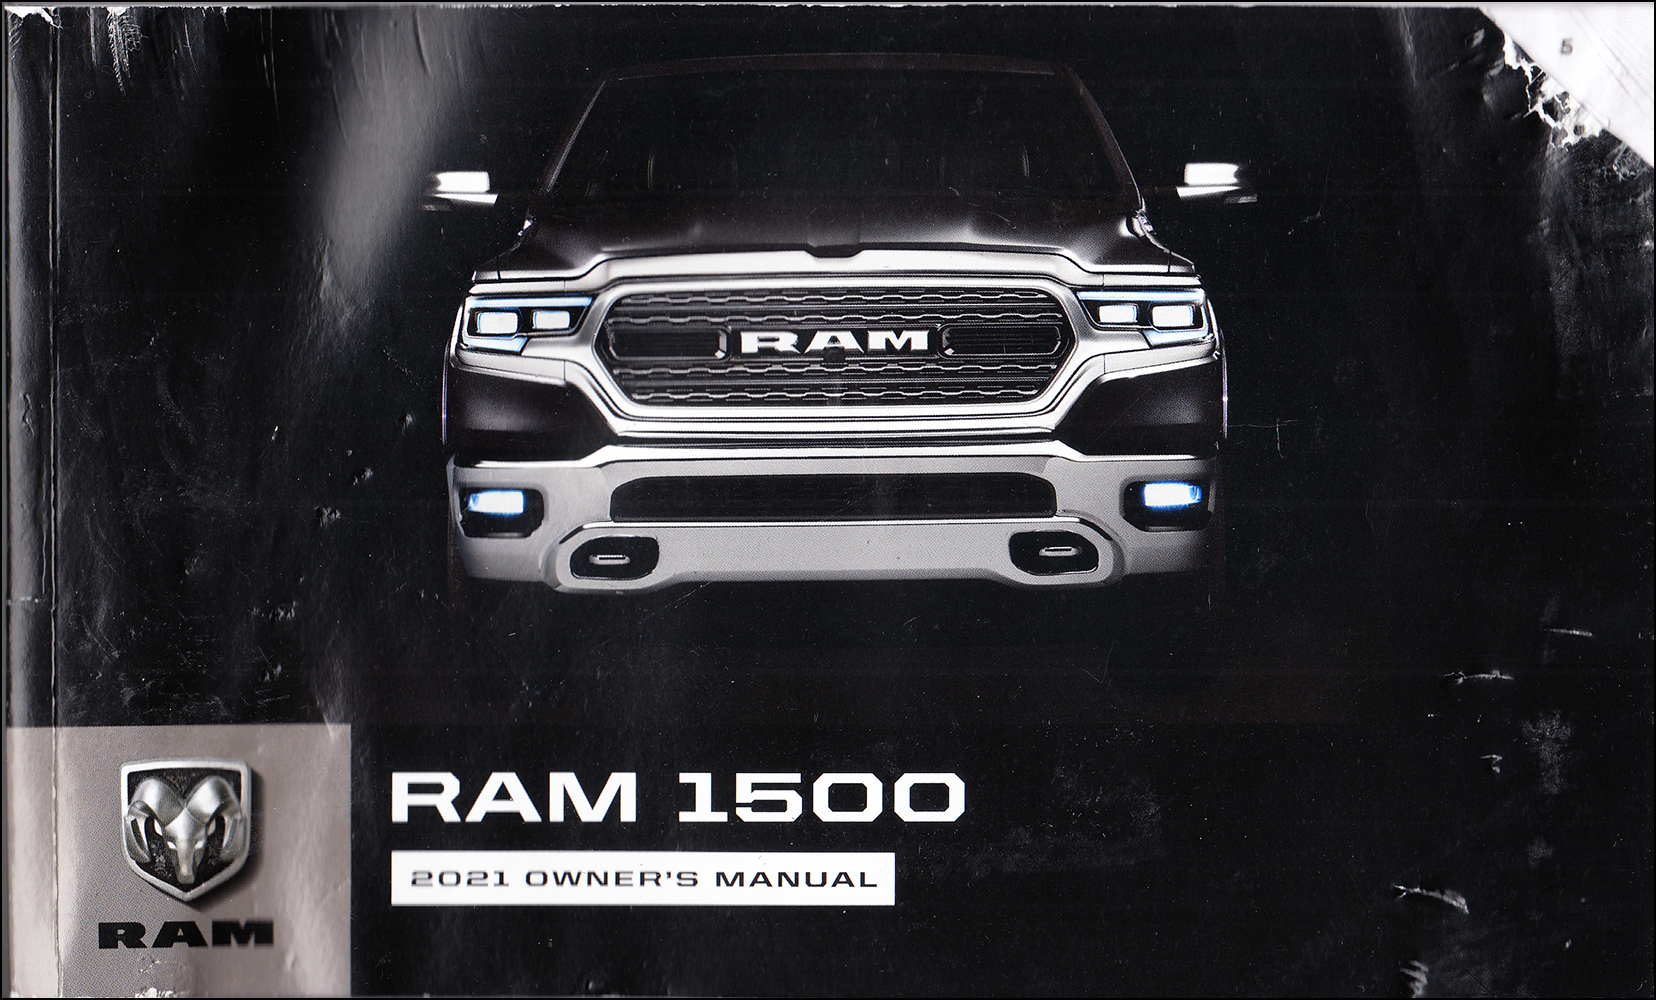 2021 Ram Truck 1500 DT Owner's Manual Original 